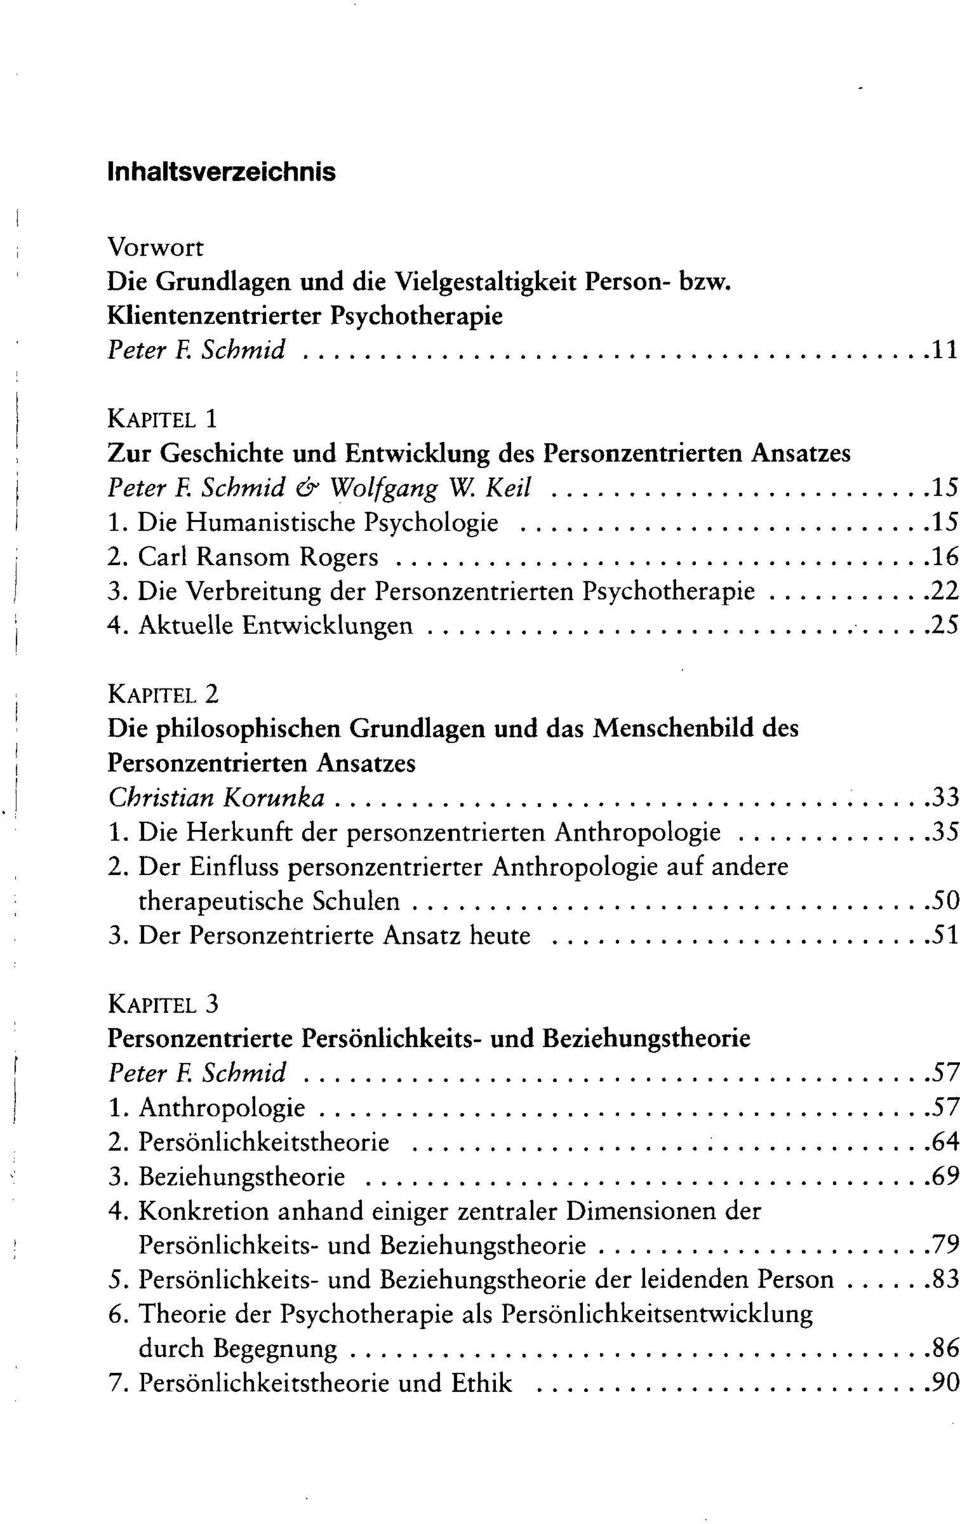 Die Verbreitung der Personzentrierten Psychotherapie 22 4.